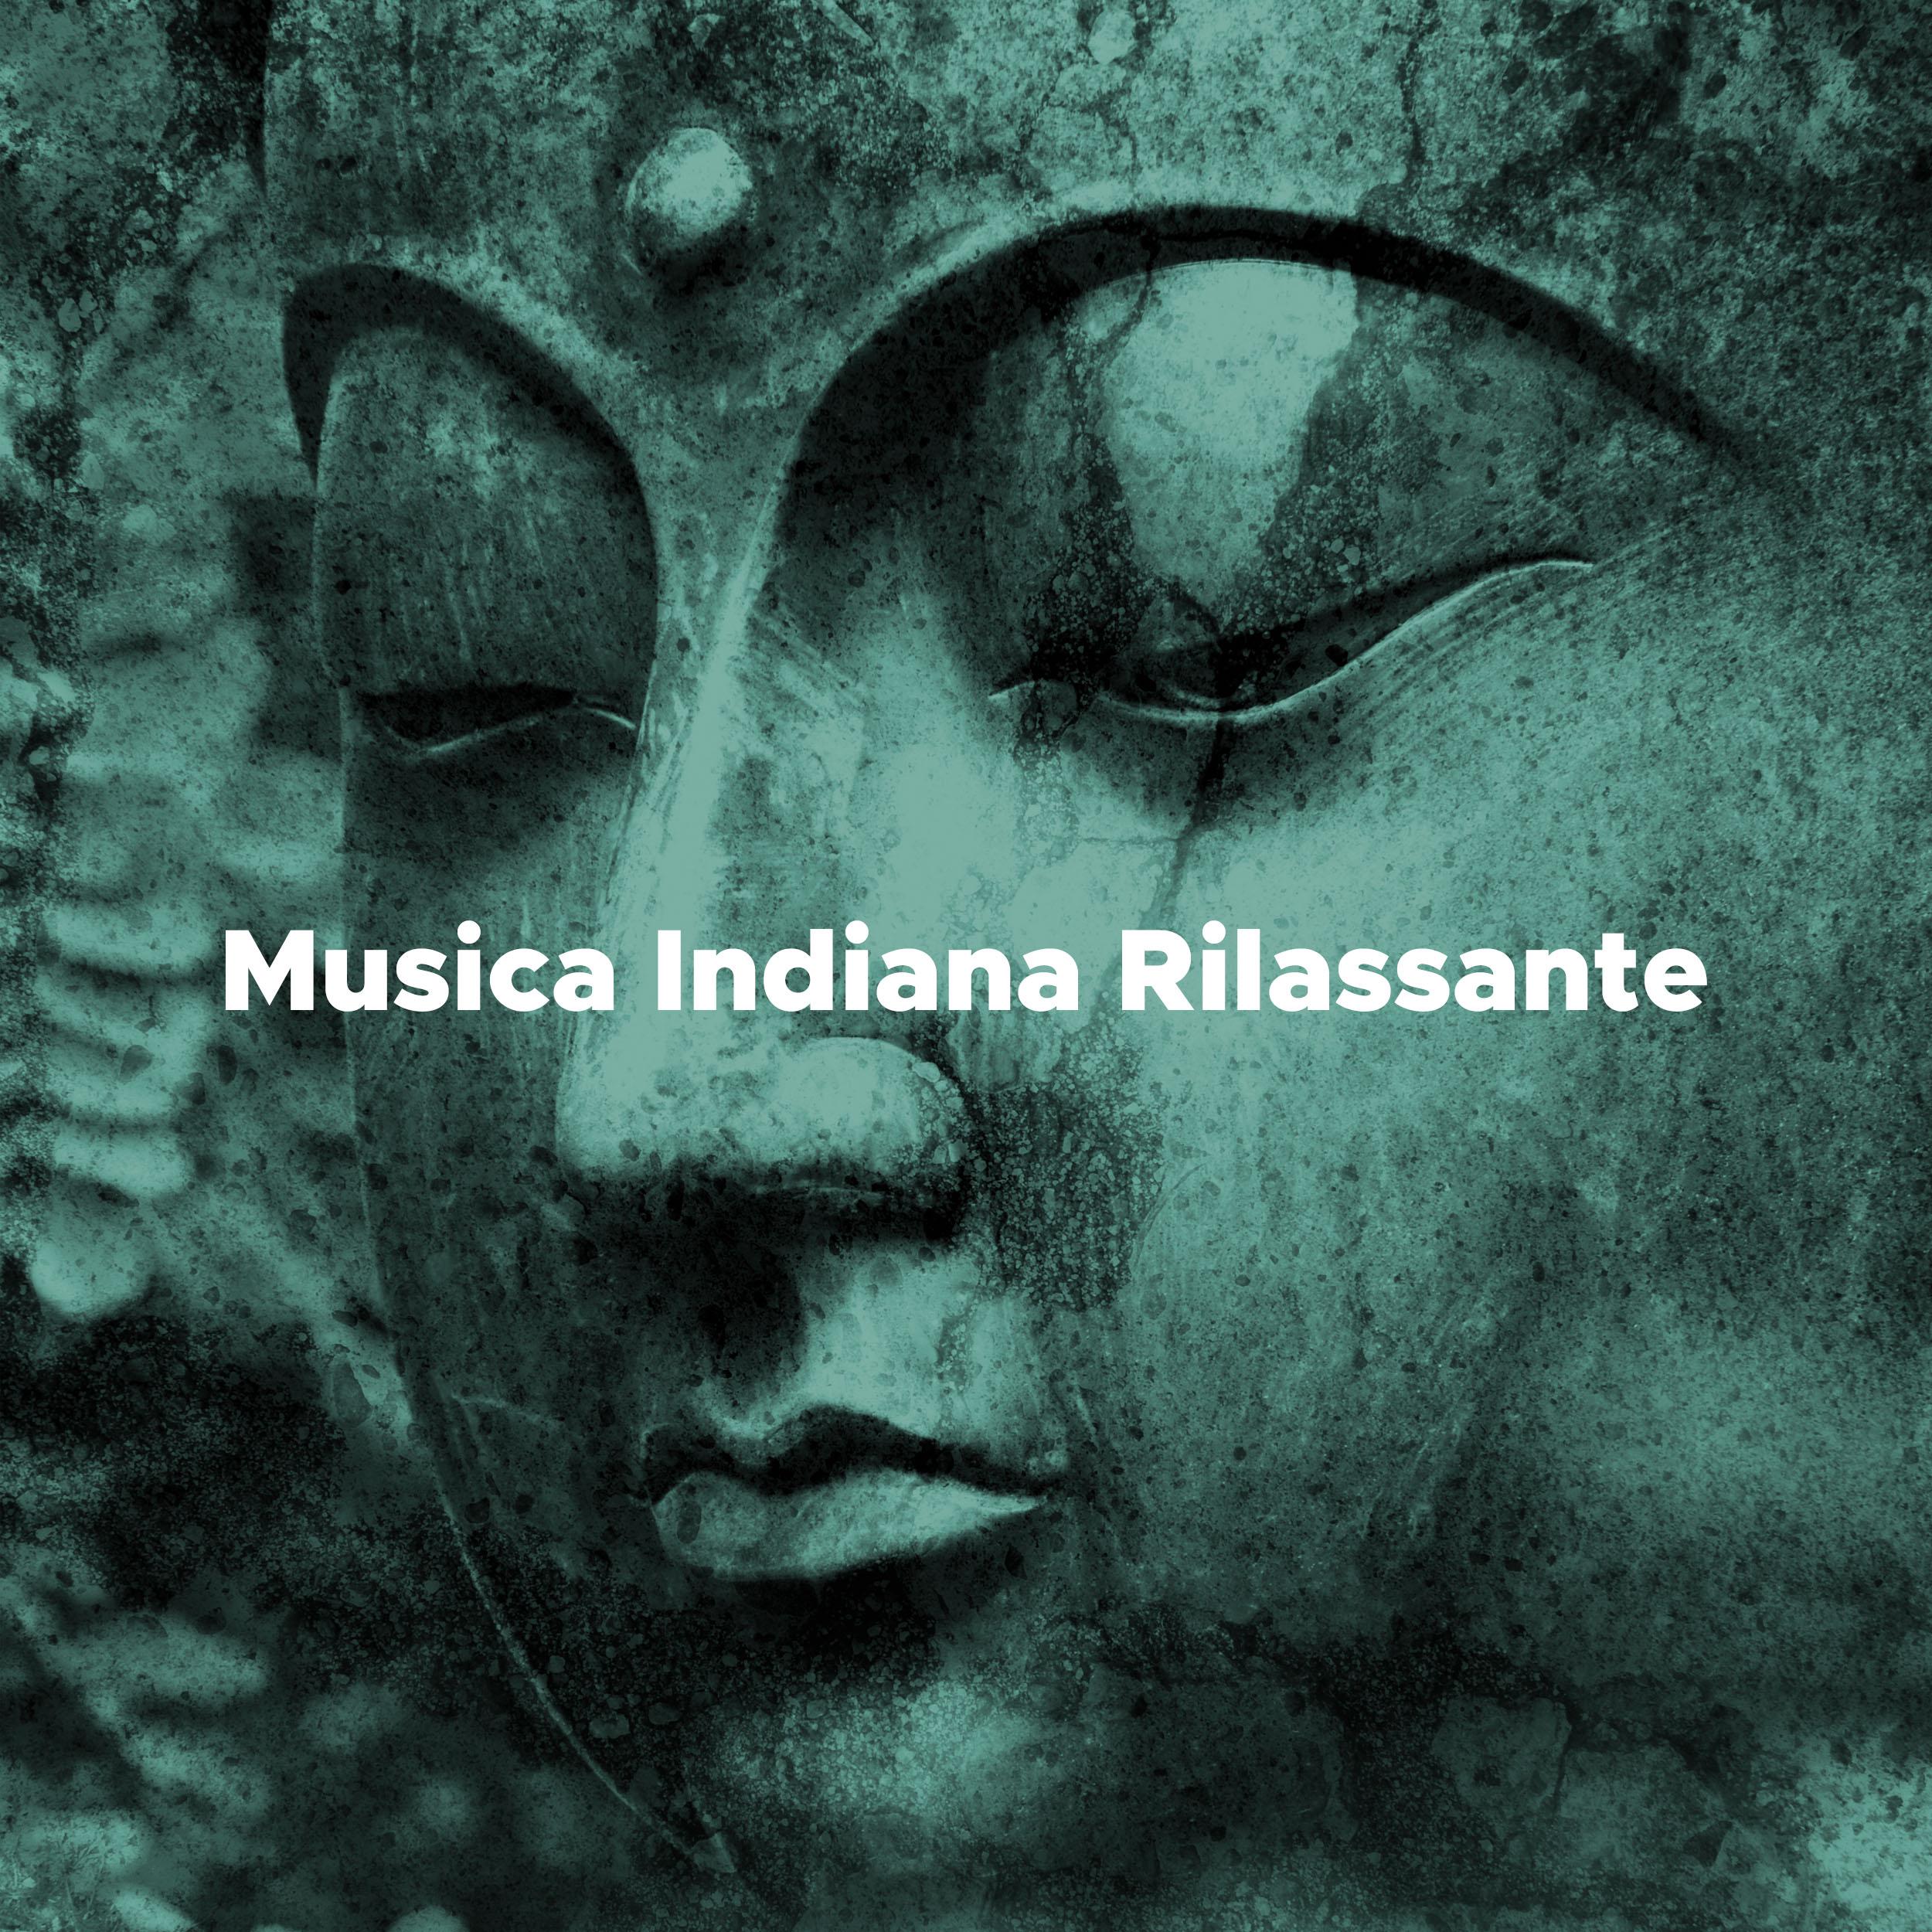 Musica Indiana Rilassante